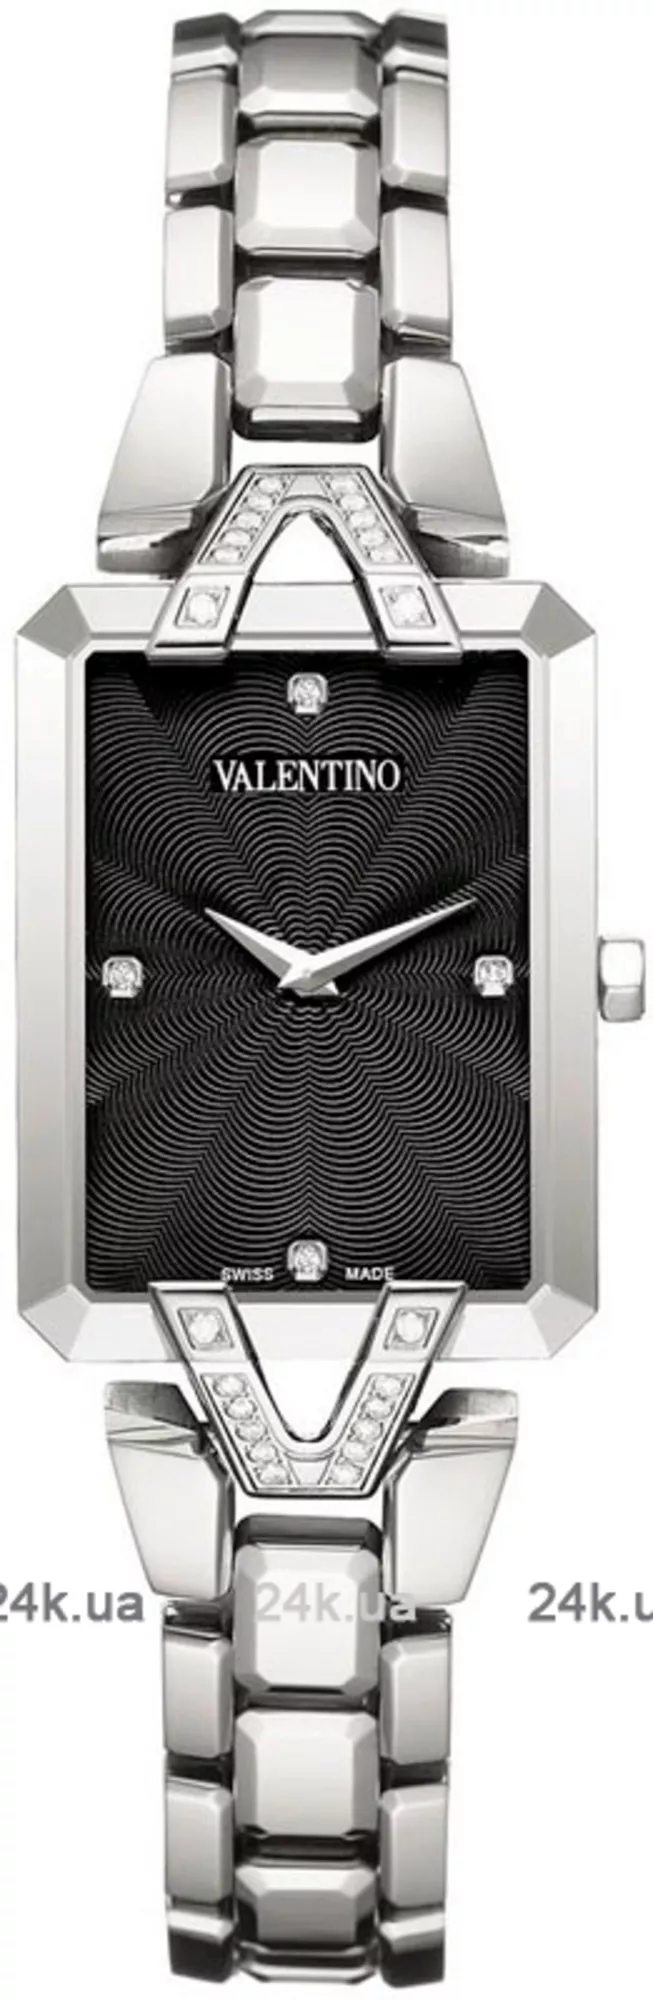 Часы Valentino VL36SBQ9109SS099